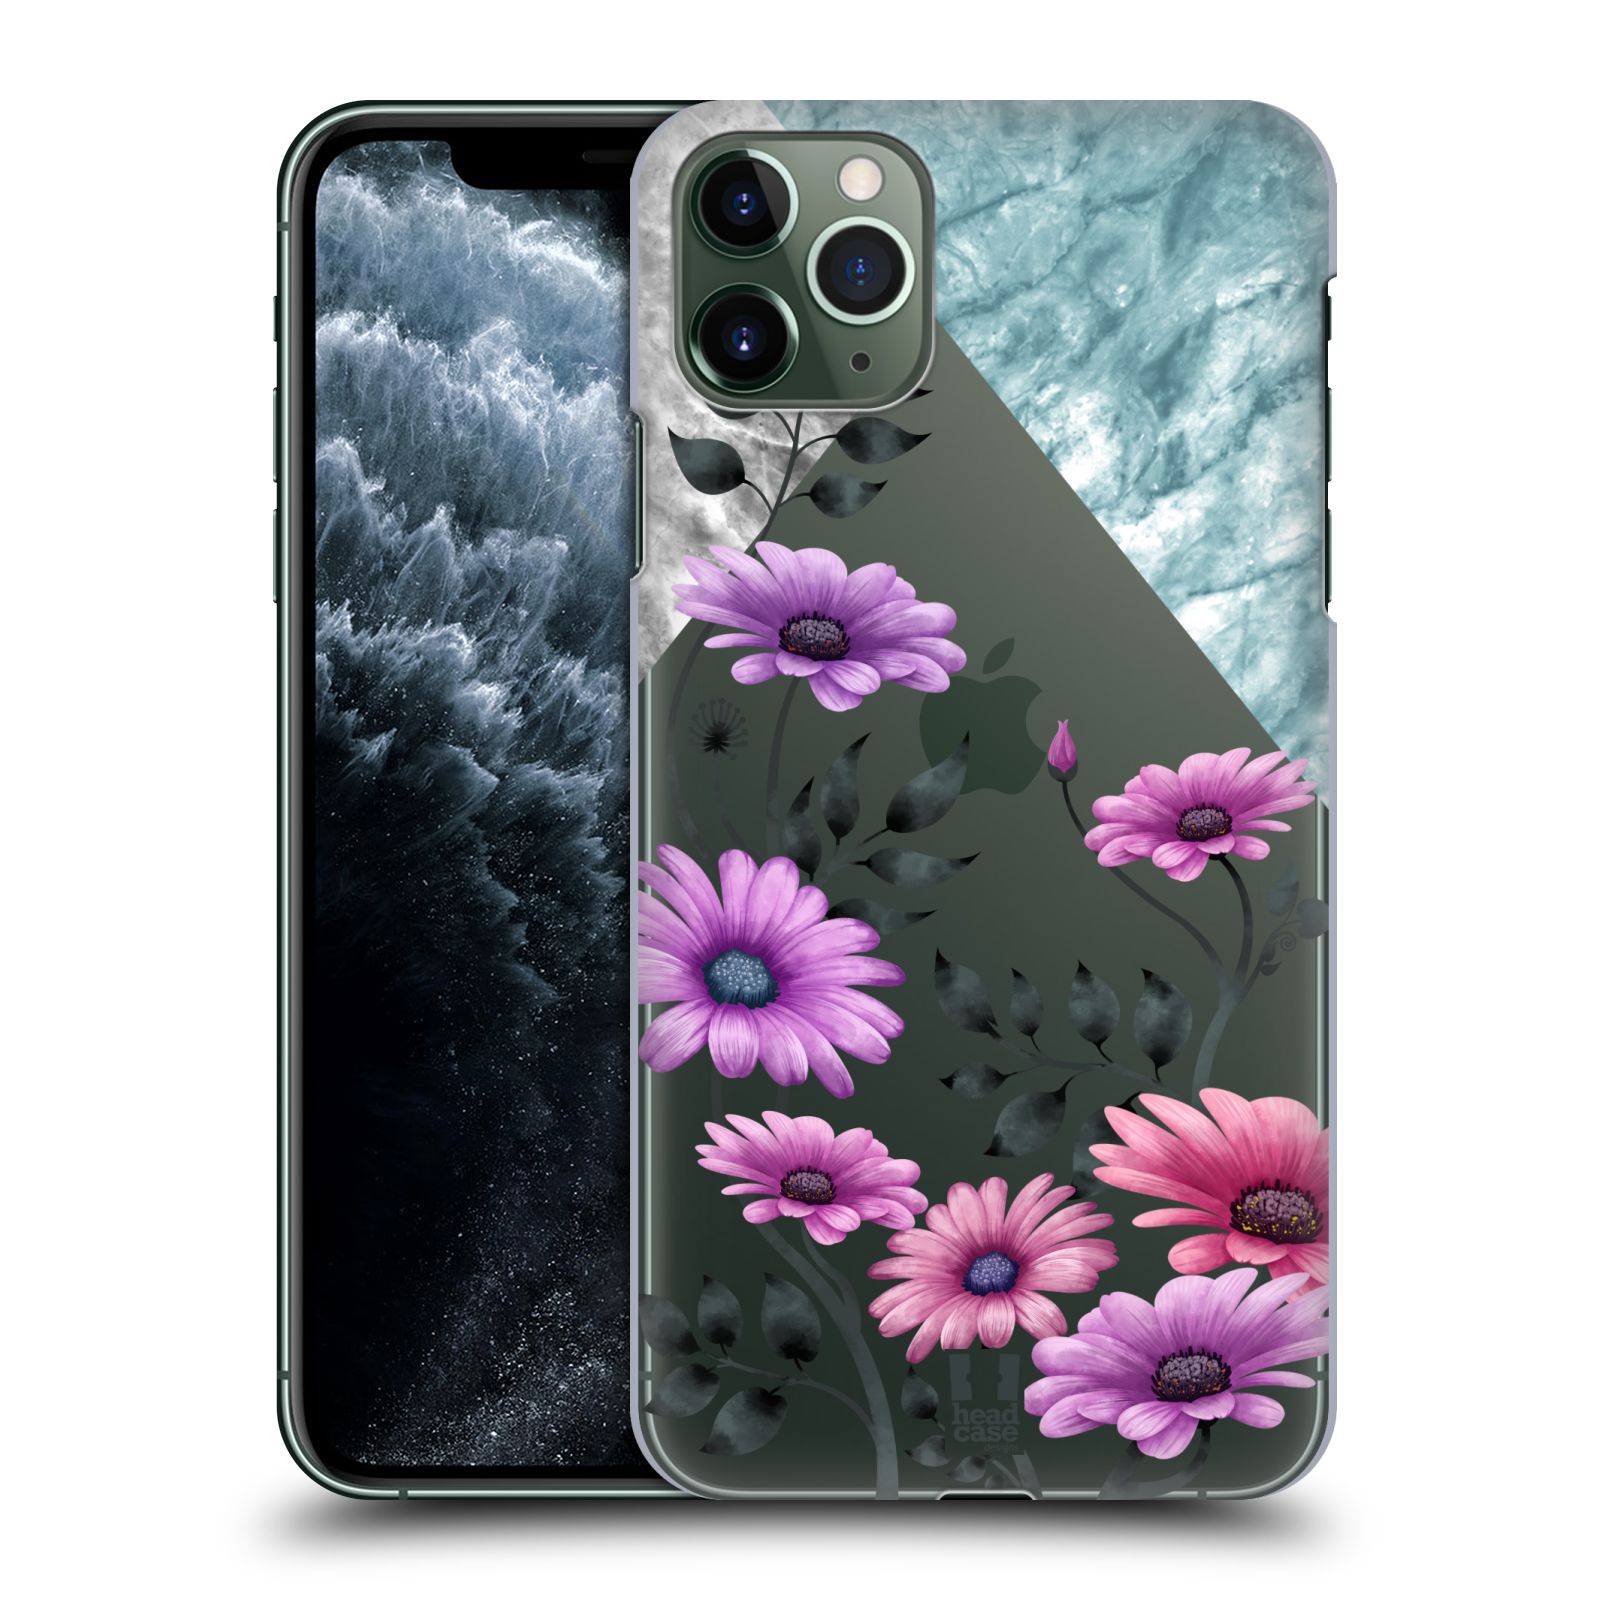 Pouzdro na mobil Apple Iphone 11 PRO MAX - HEAD CASE - květiny hvězdnice, Aster fialová a modrá